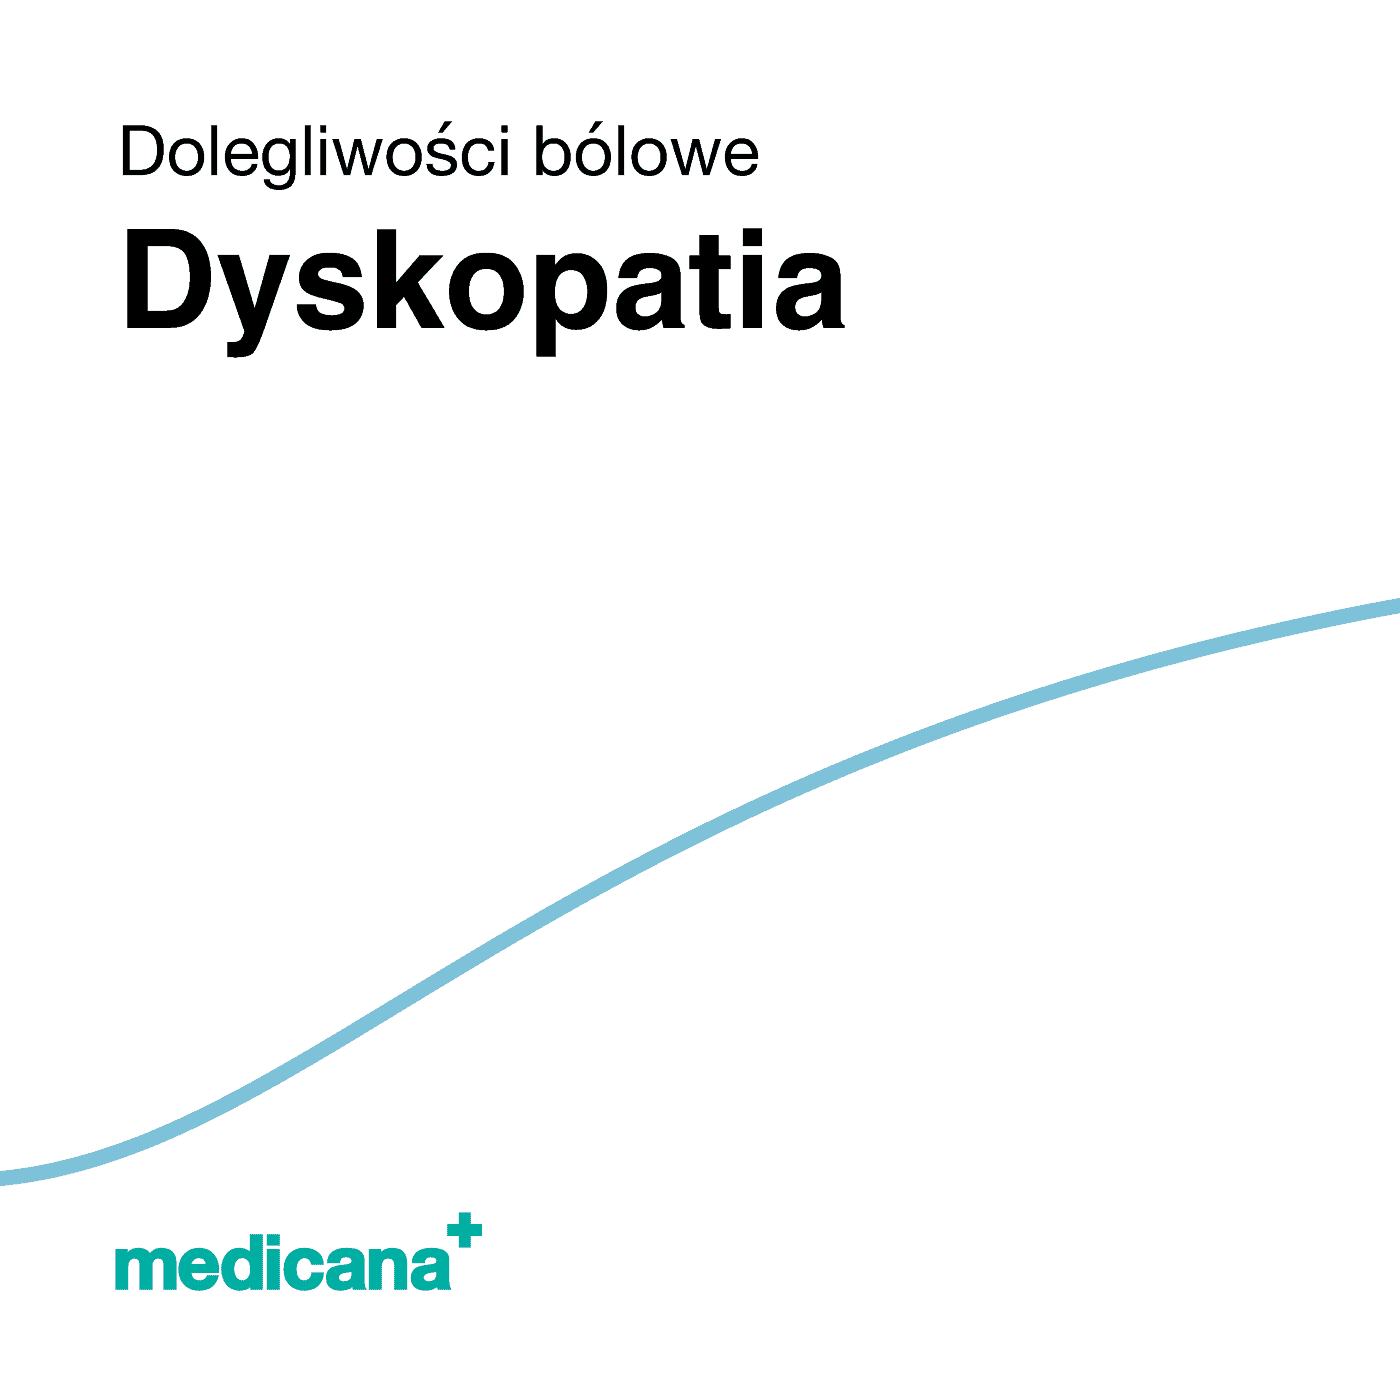 Grafika, białe tło z błękitną kreską, czarnym napisem Dolegliwości bólowe - Dyskopatia i logo Medicana Centrum Terapii Medyczna Marihuana w lewym dolnym rogu.